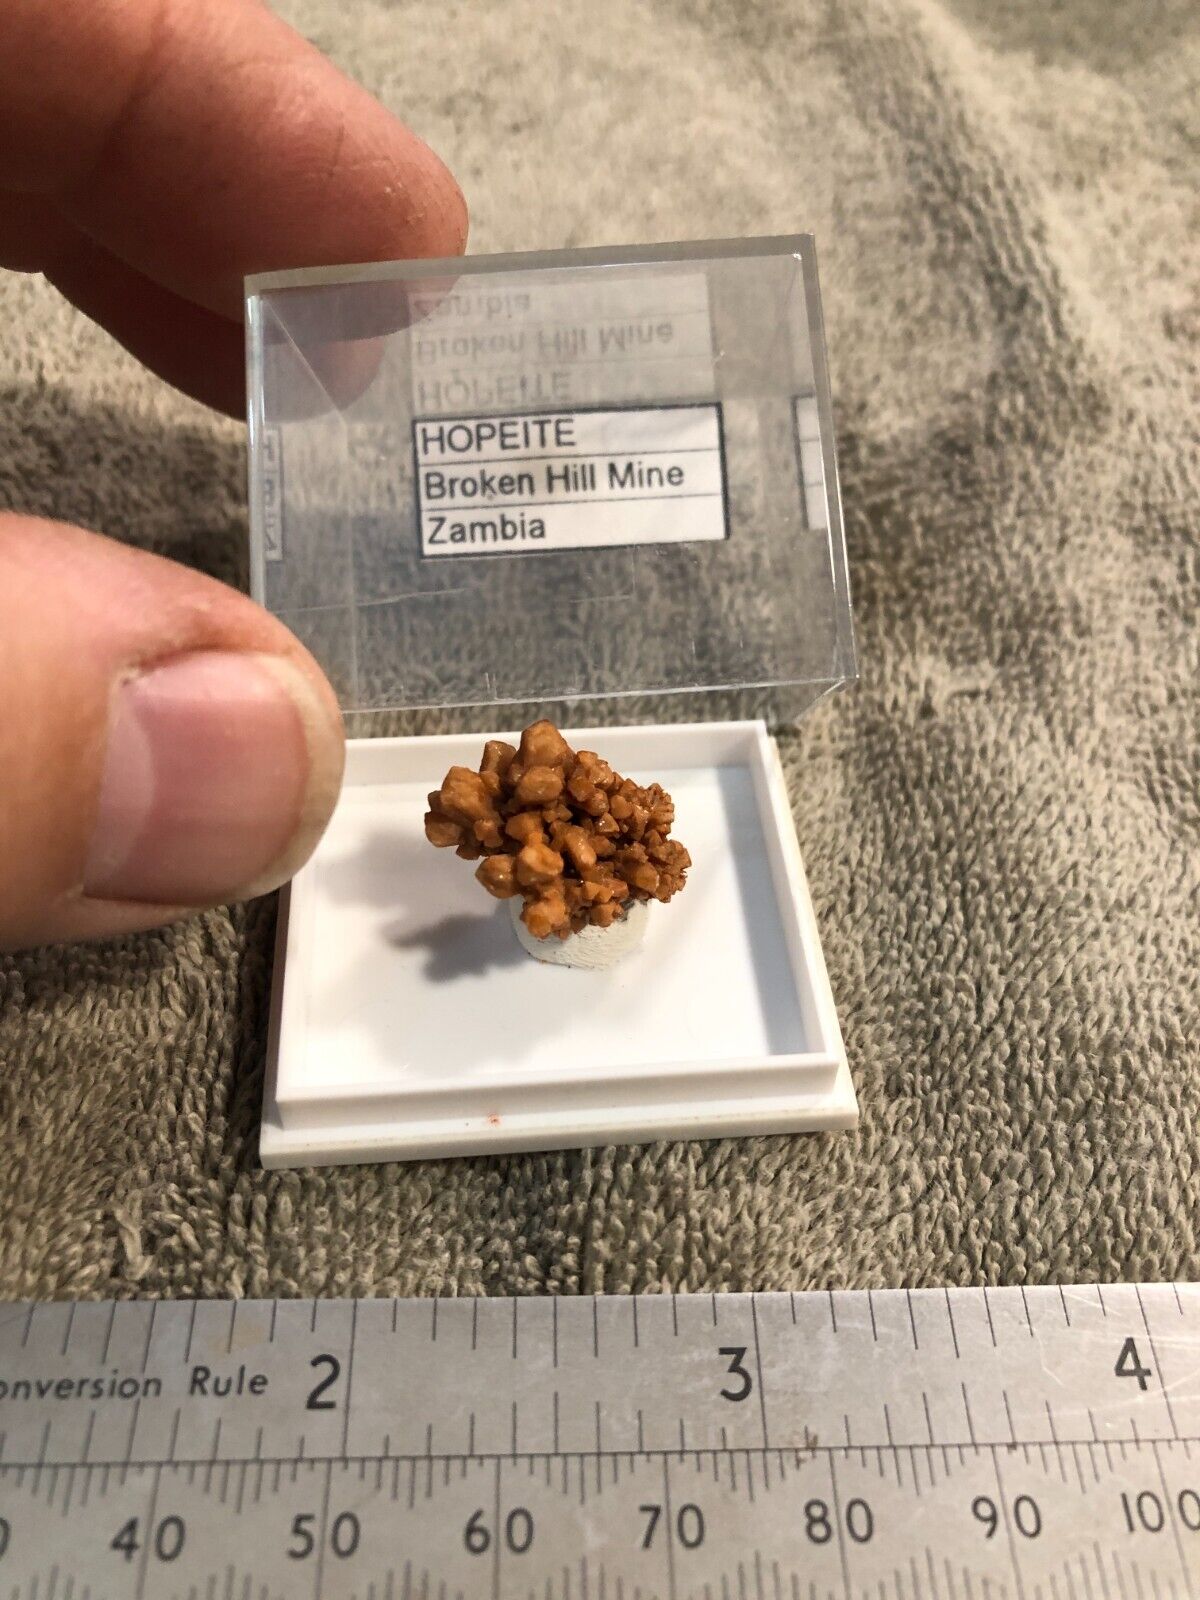 Hopeite, Broken Hill Mine, Zambia, Rare Thumbnail specimen